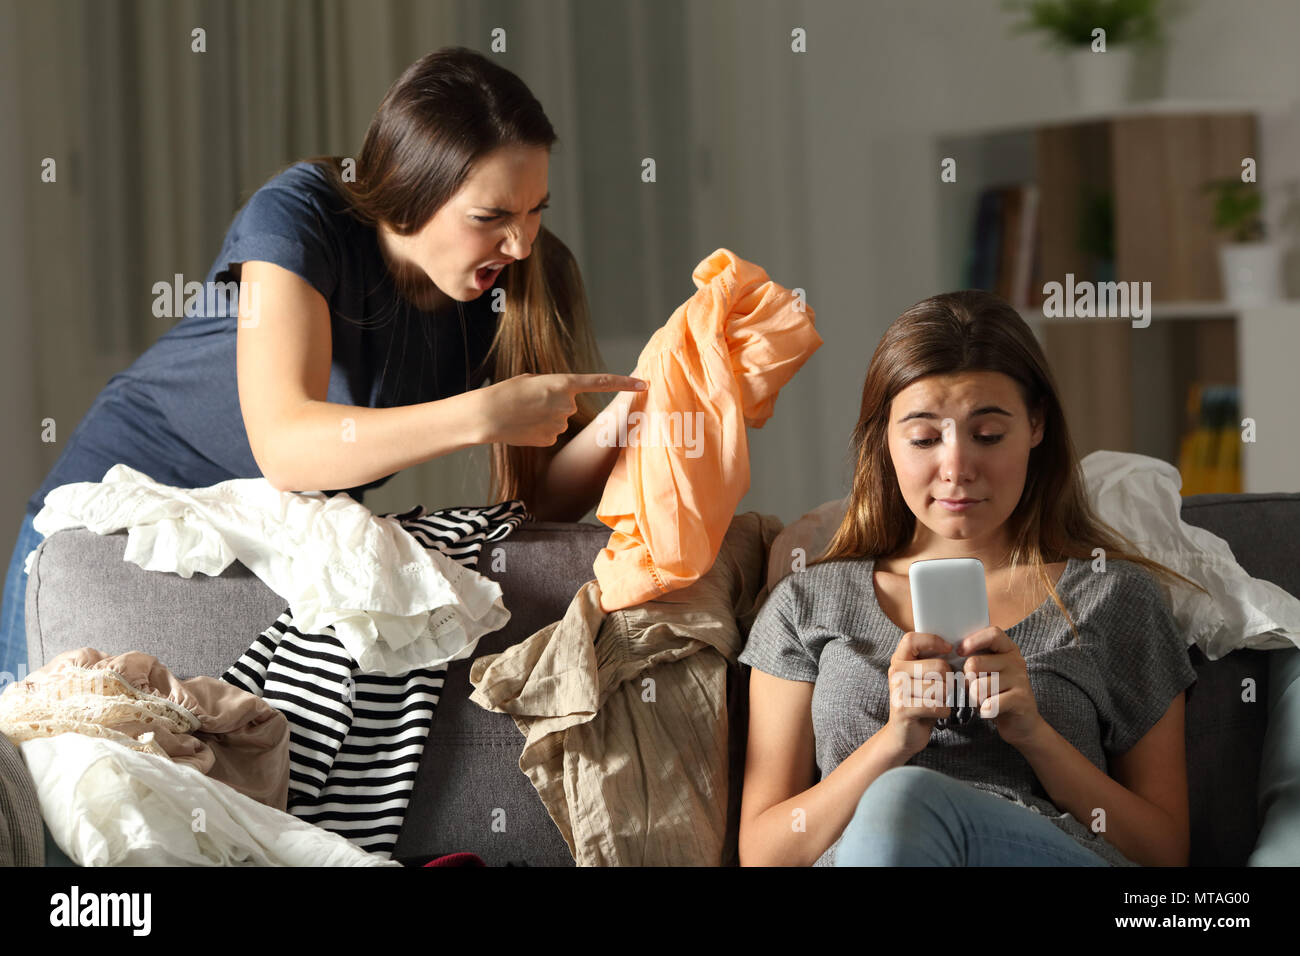 Arrabbiato donna scolding al suo confuso compagno di stanza di seduta su un divano nel salotto di casa Foto Stock